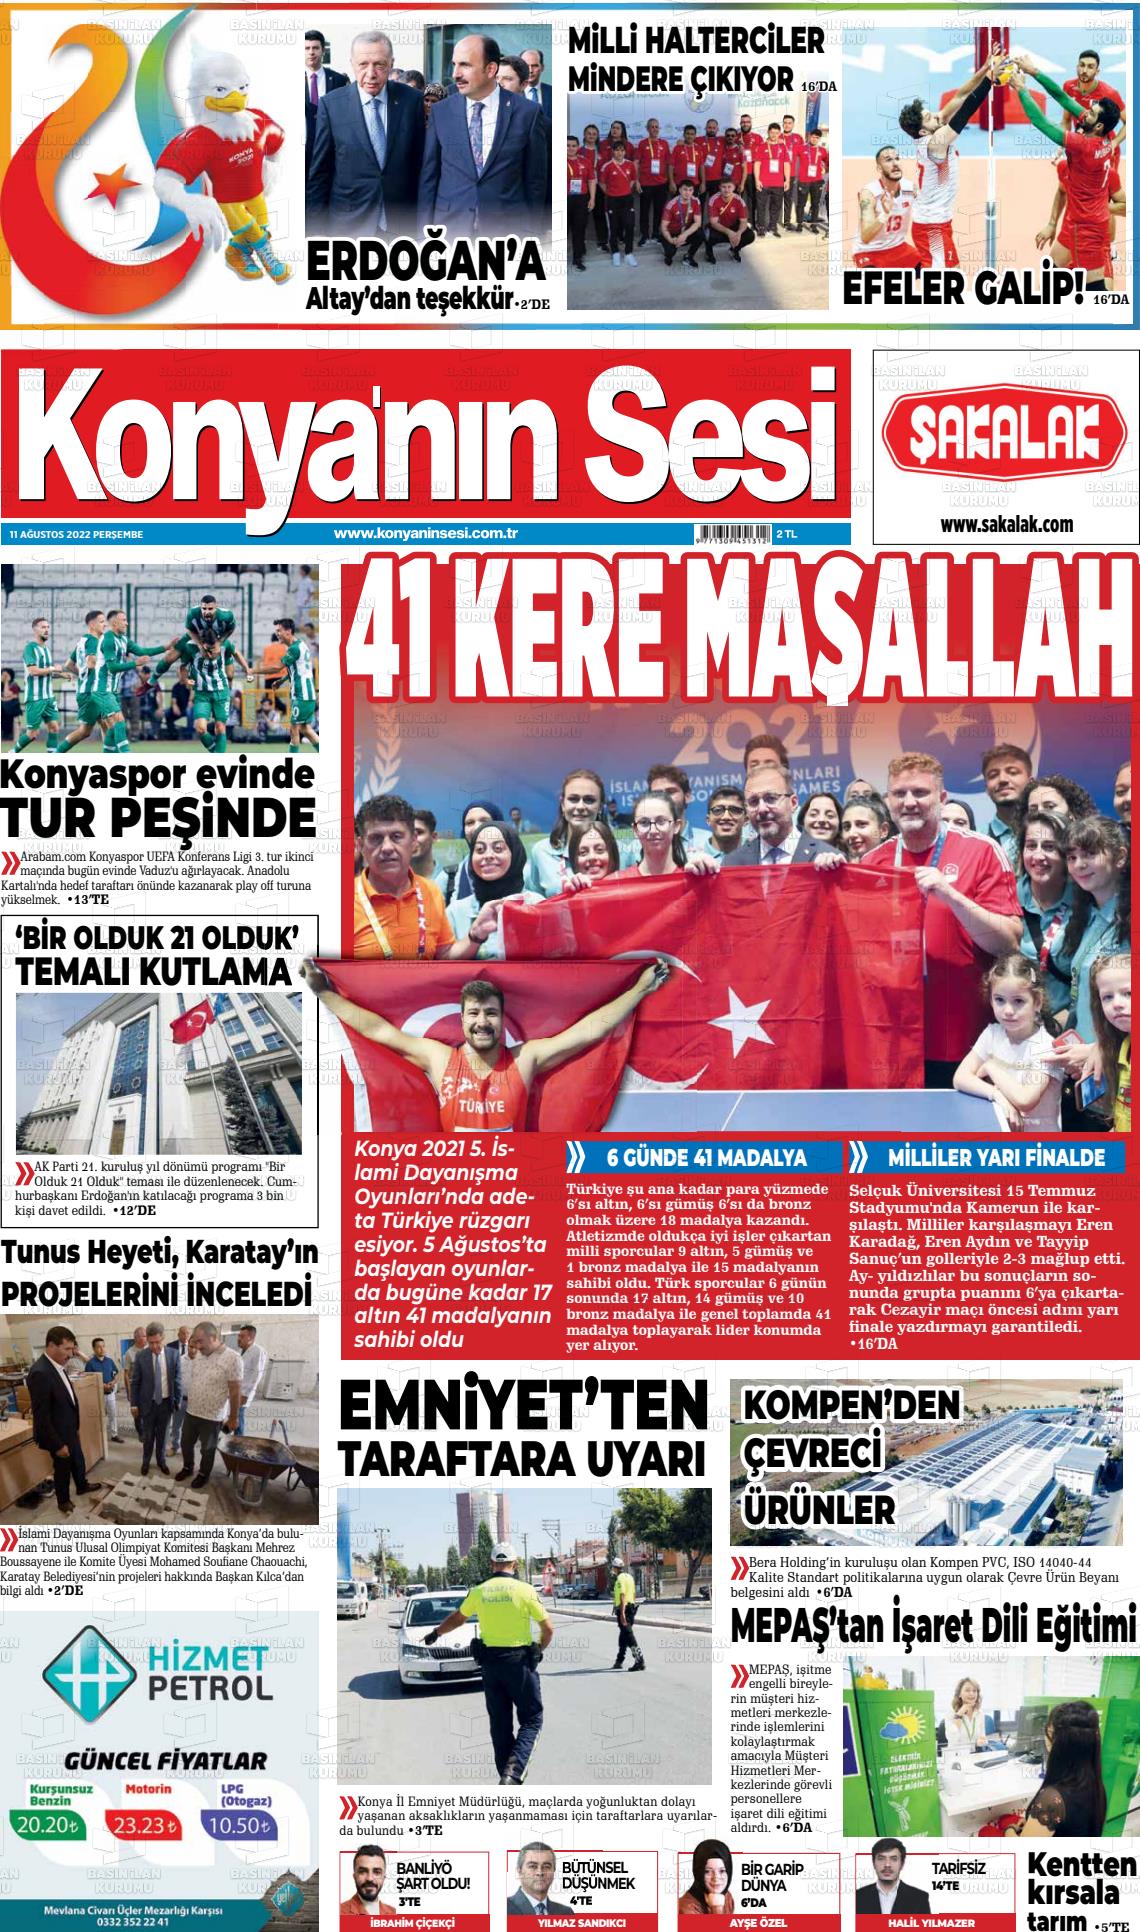 11 Ağustos 2022 Konyanin Sesi Gazete Manşeti